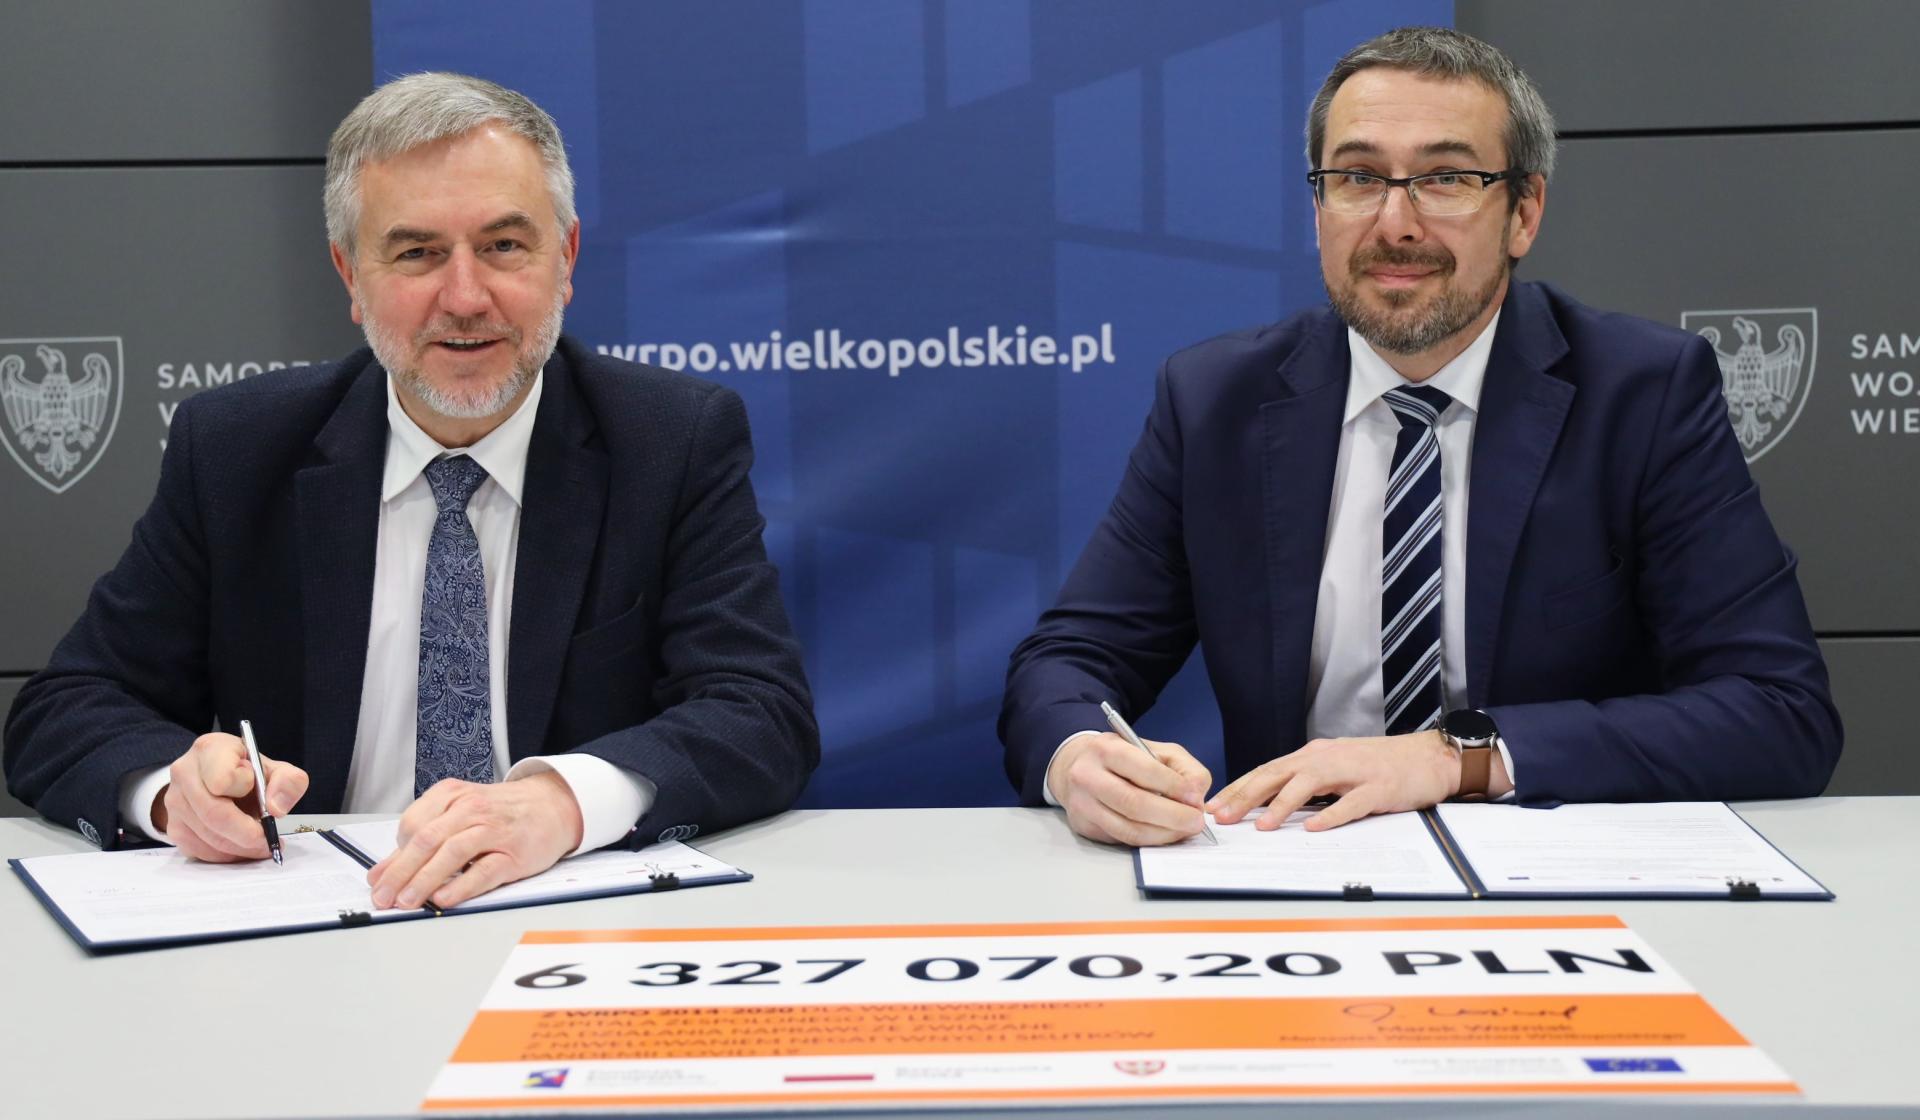  Marszałek podpisał umowę na ponad 6 mln zł unijnego dofinansowania dla leszczyńskiego szpitala - zobacz więcej